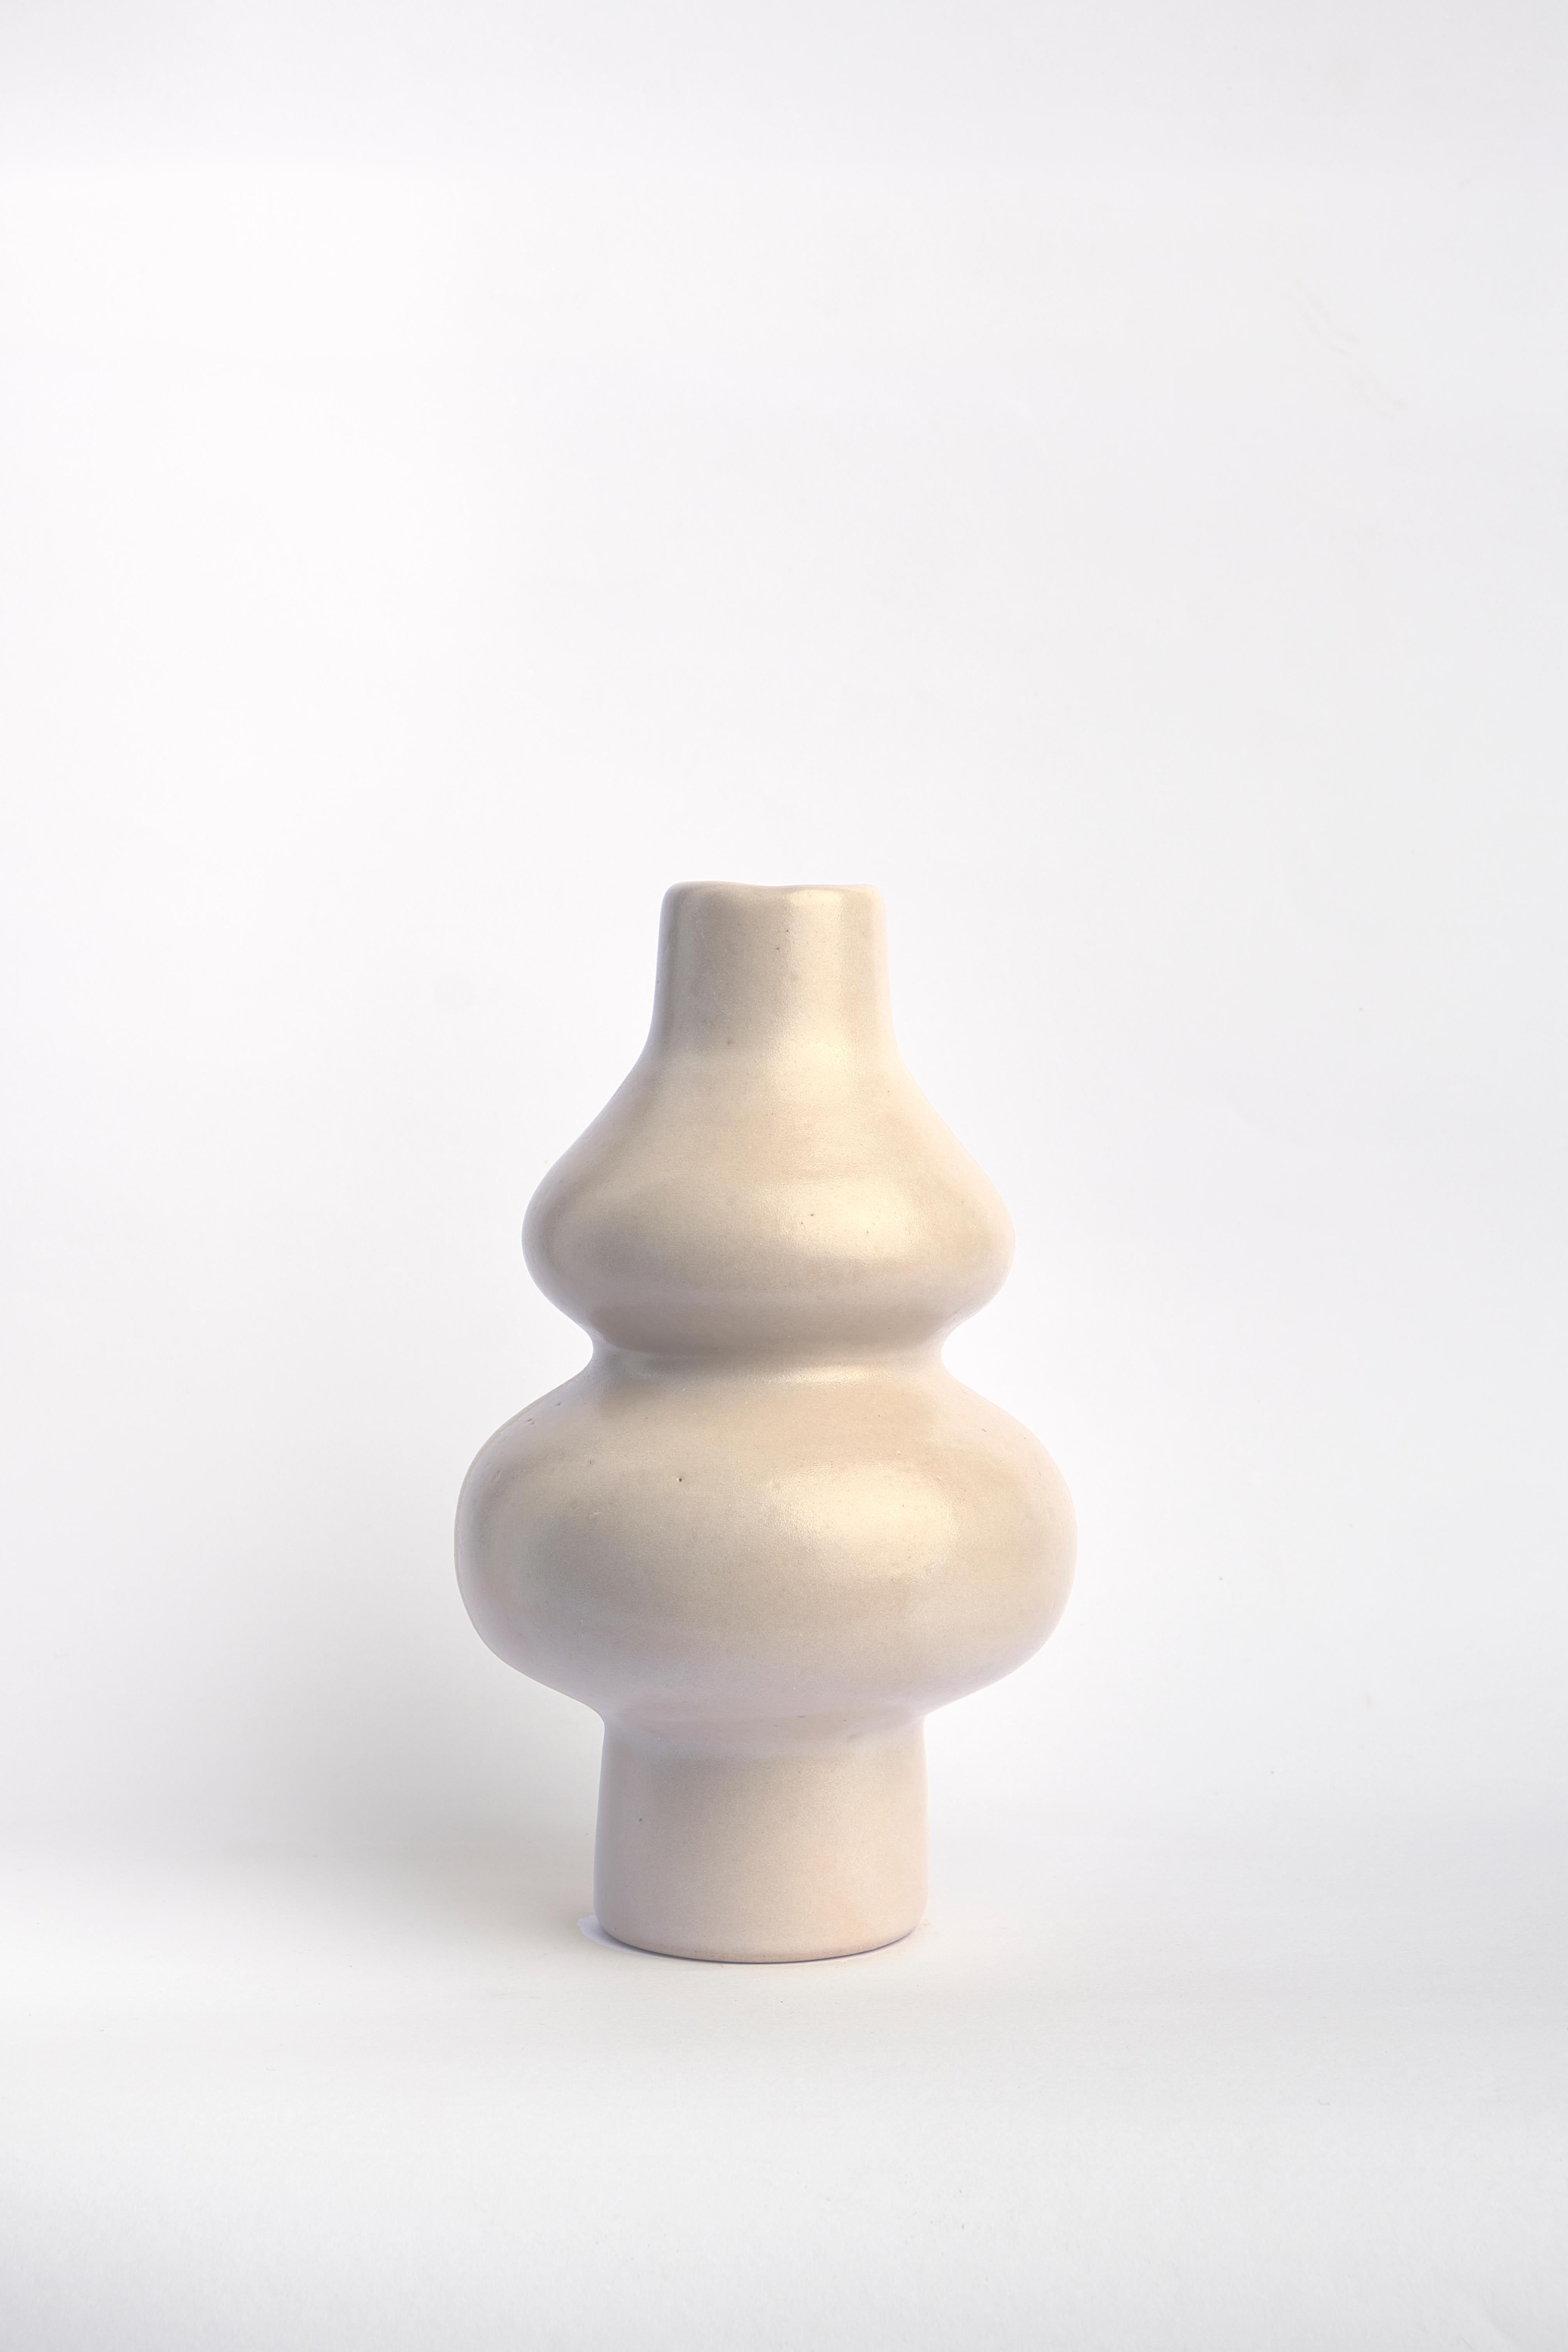 Post-Modern Barro Tostado Femme I Vase by Camila Apaez For Sale